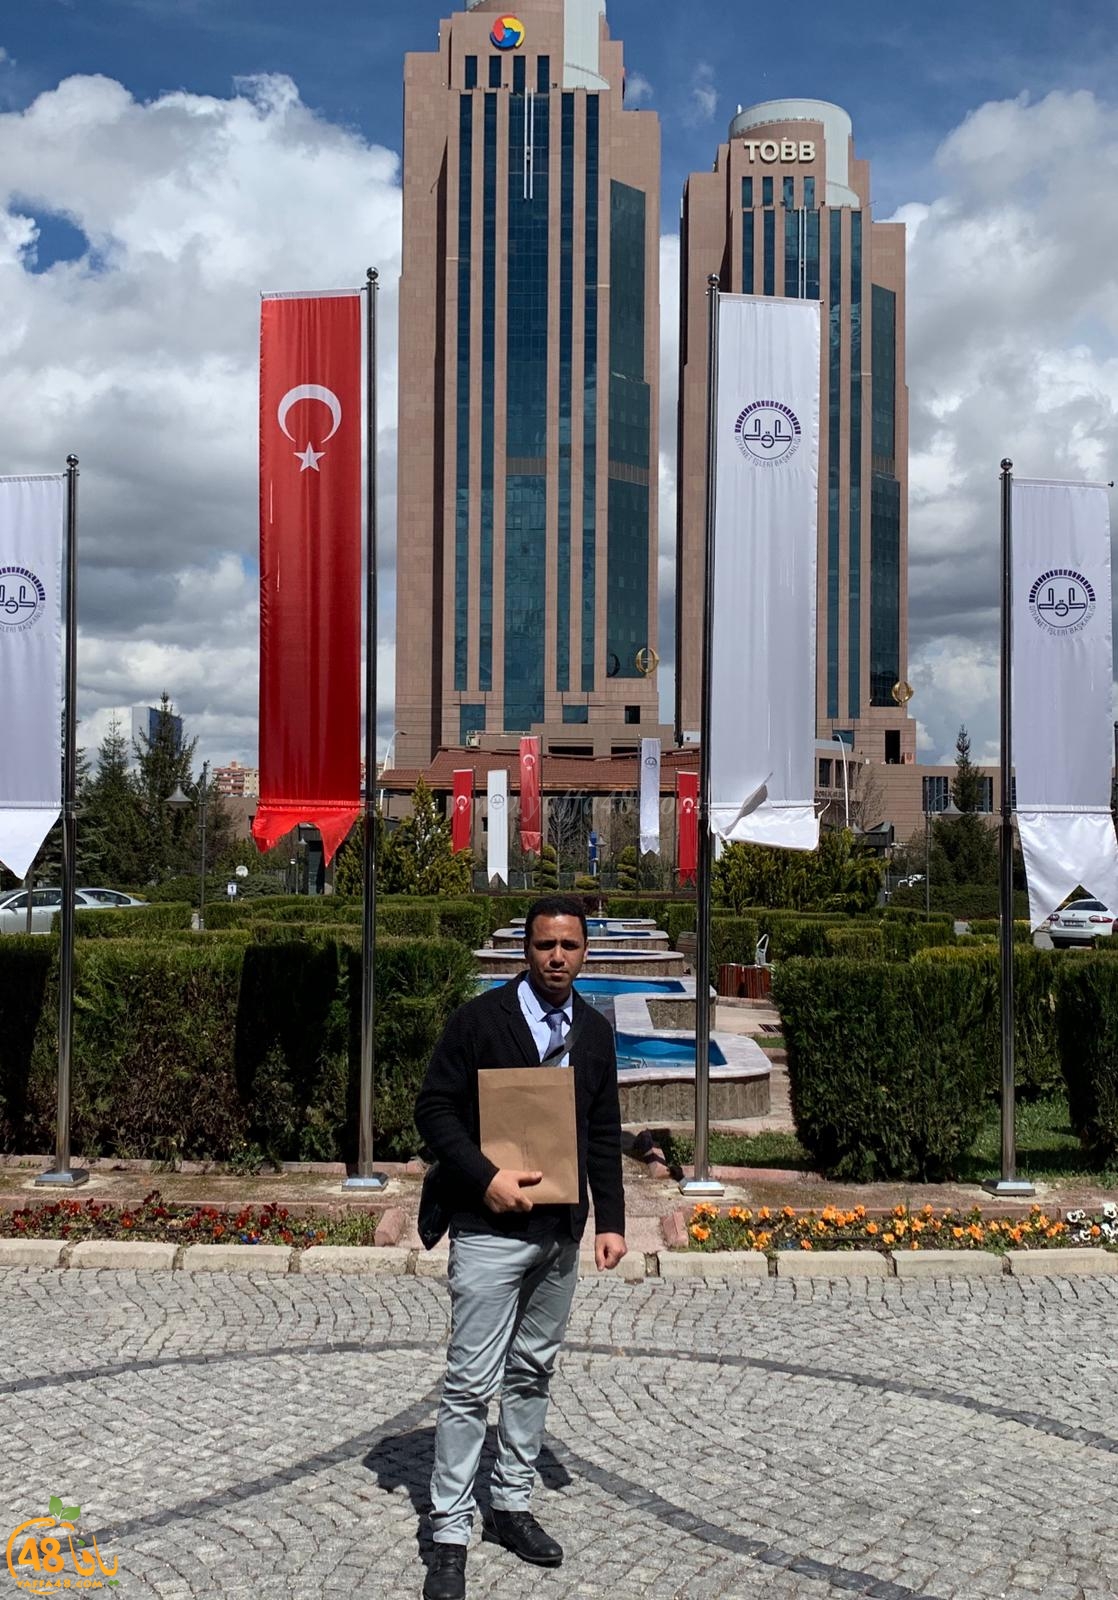 لقاء يجمع رئيس الهيئة الاسلامية بيافا مع وزير الاوقاف التركي في أنقرة حول مقبرة الاسعاف